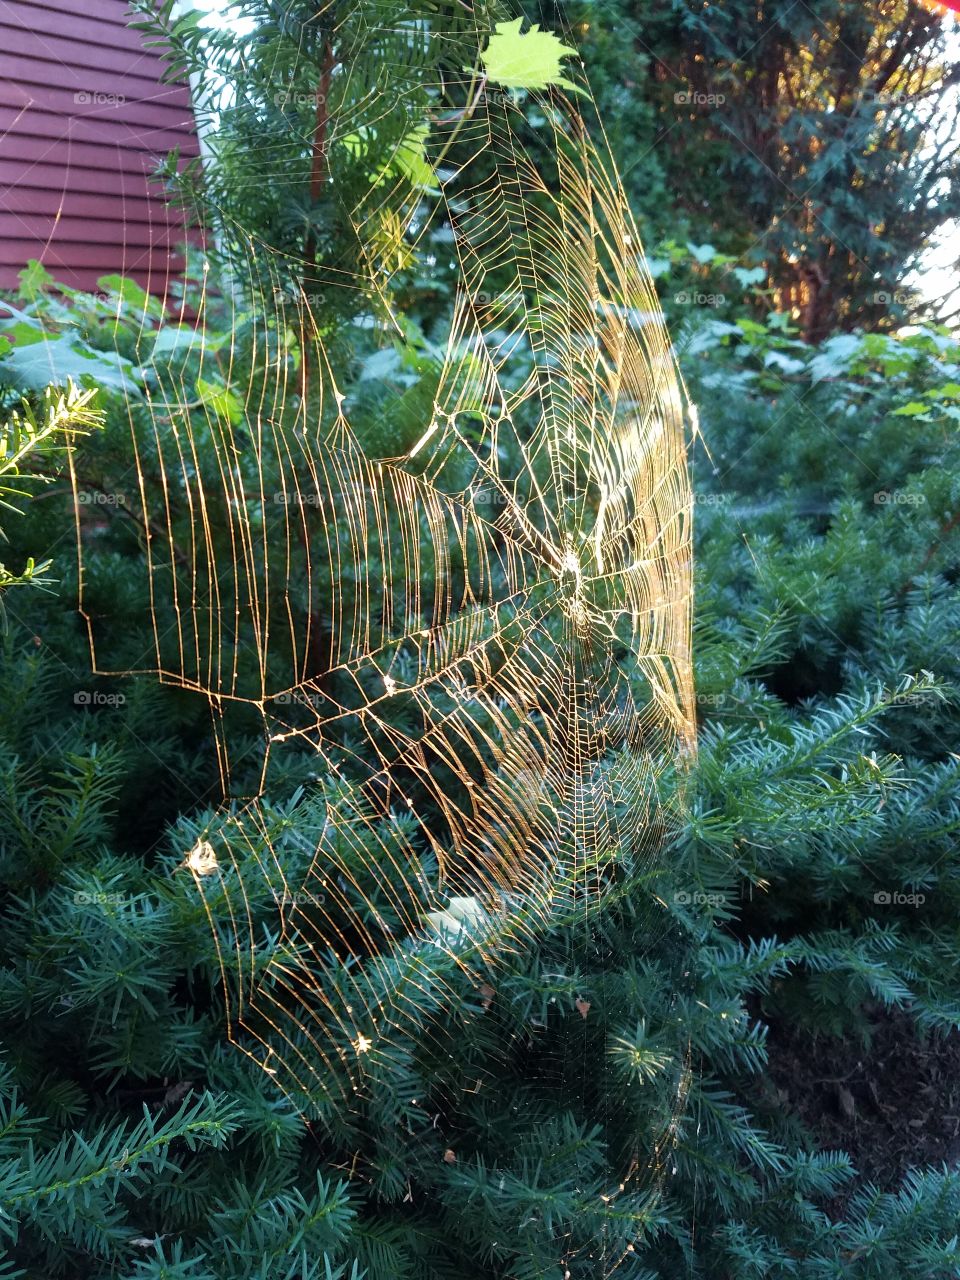 Web on the tree